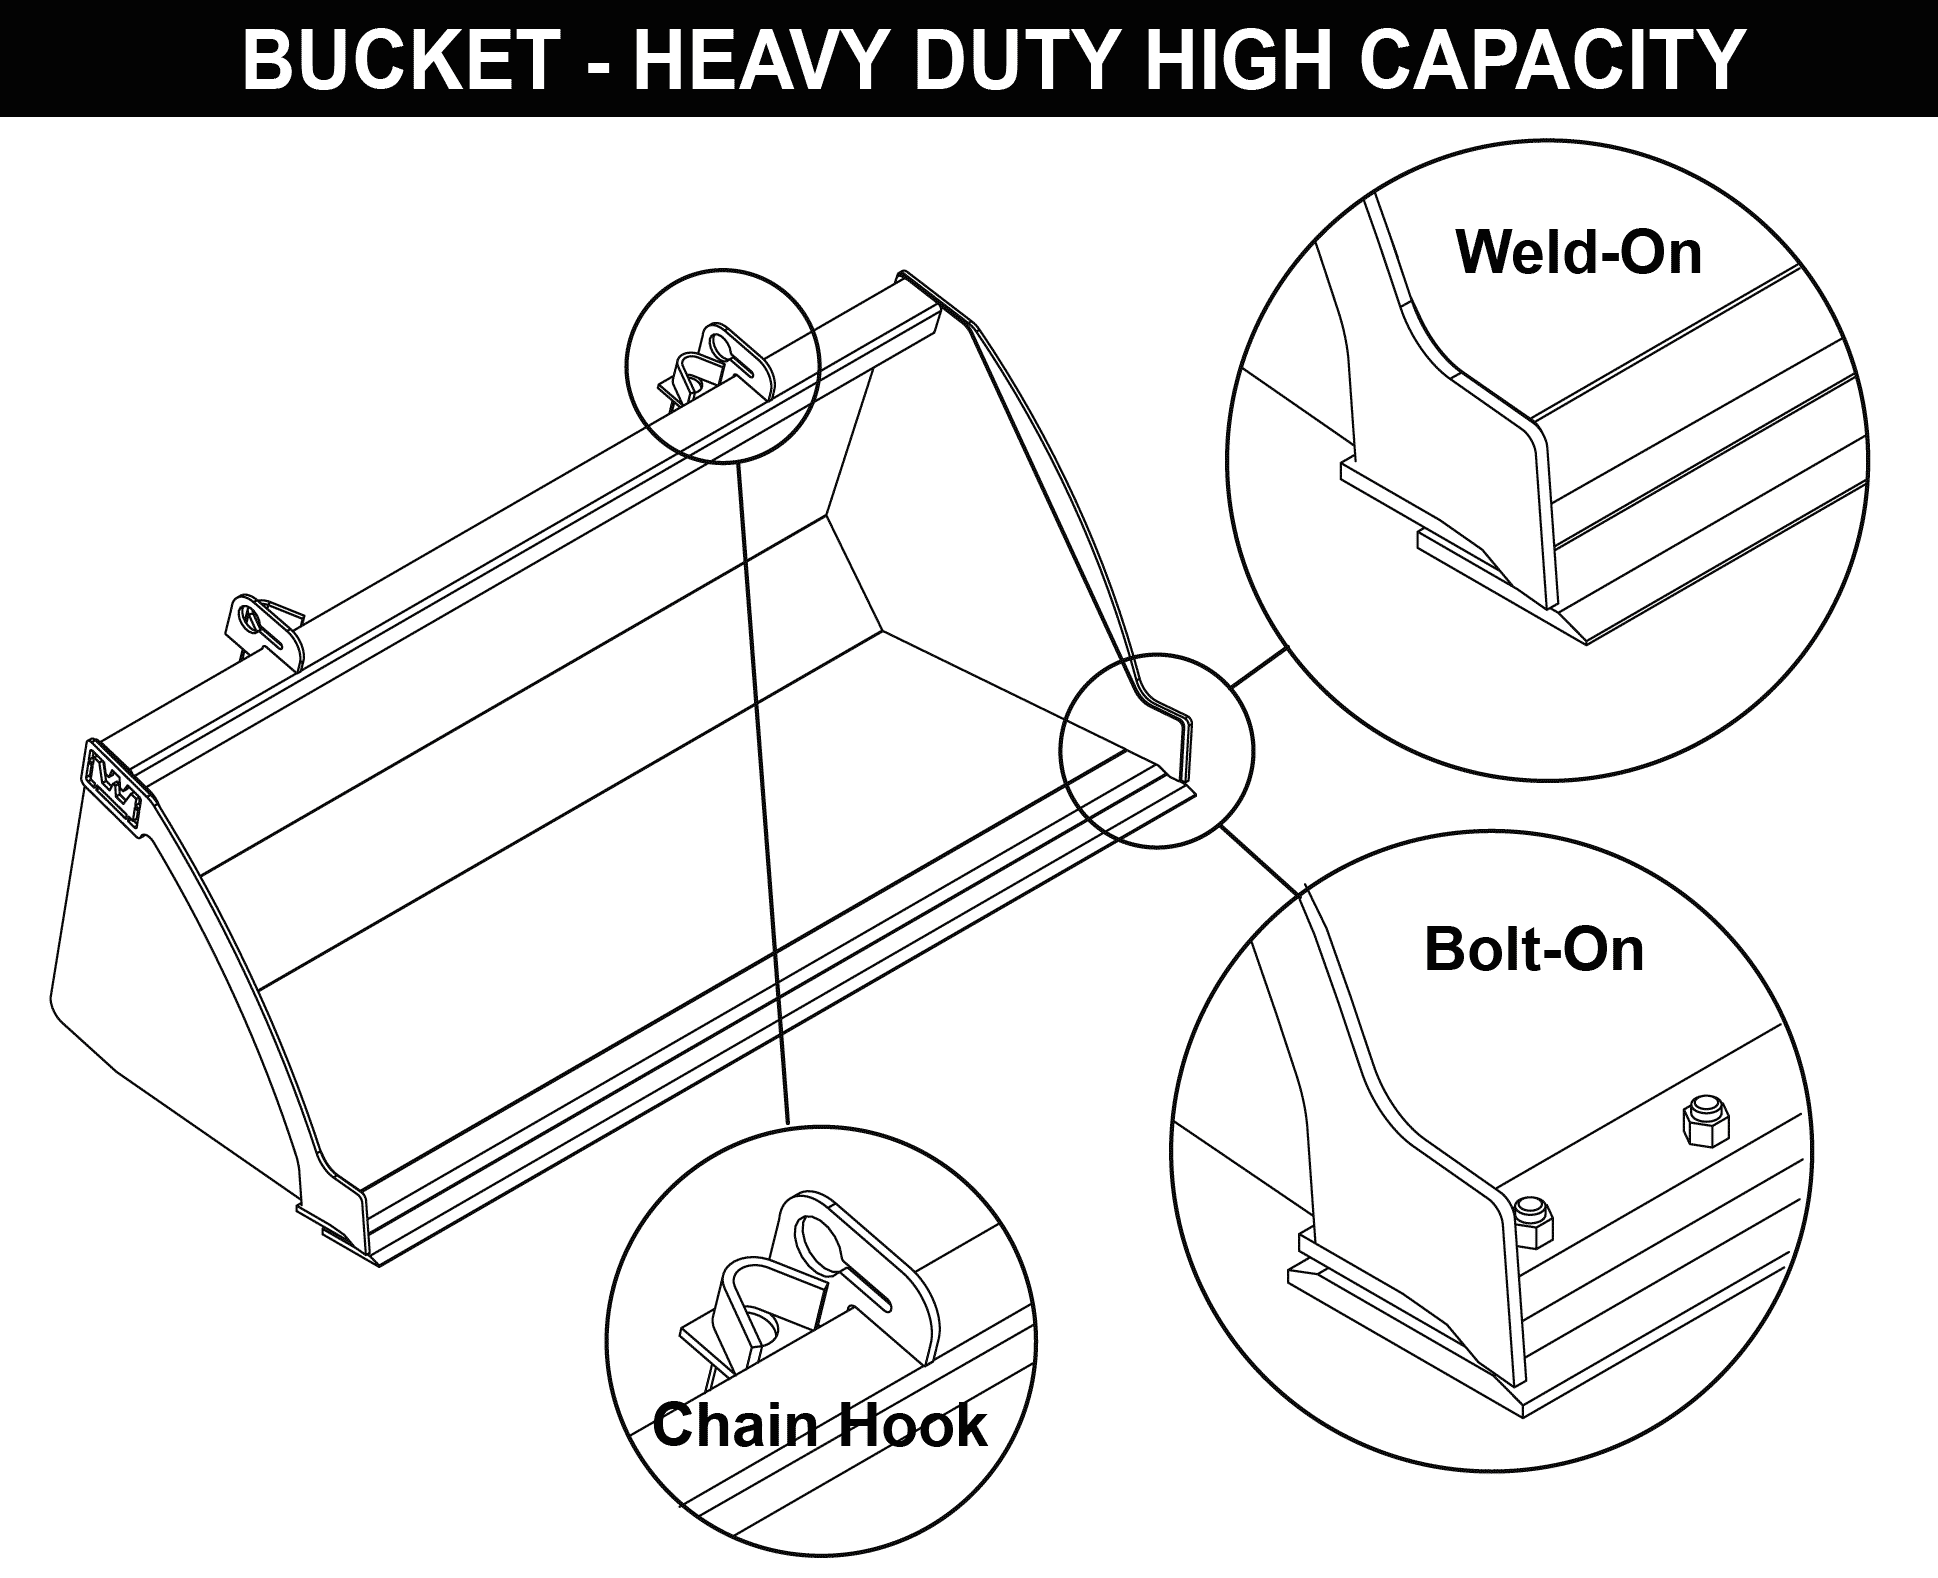 Bucket-Heavy Duty High Capacity